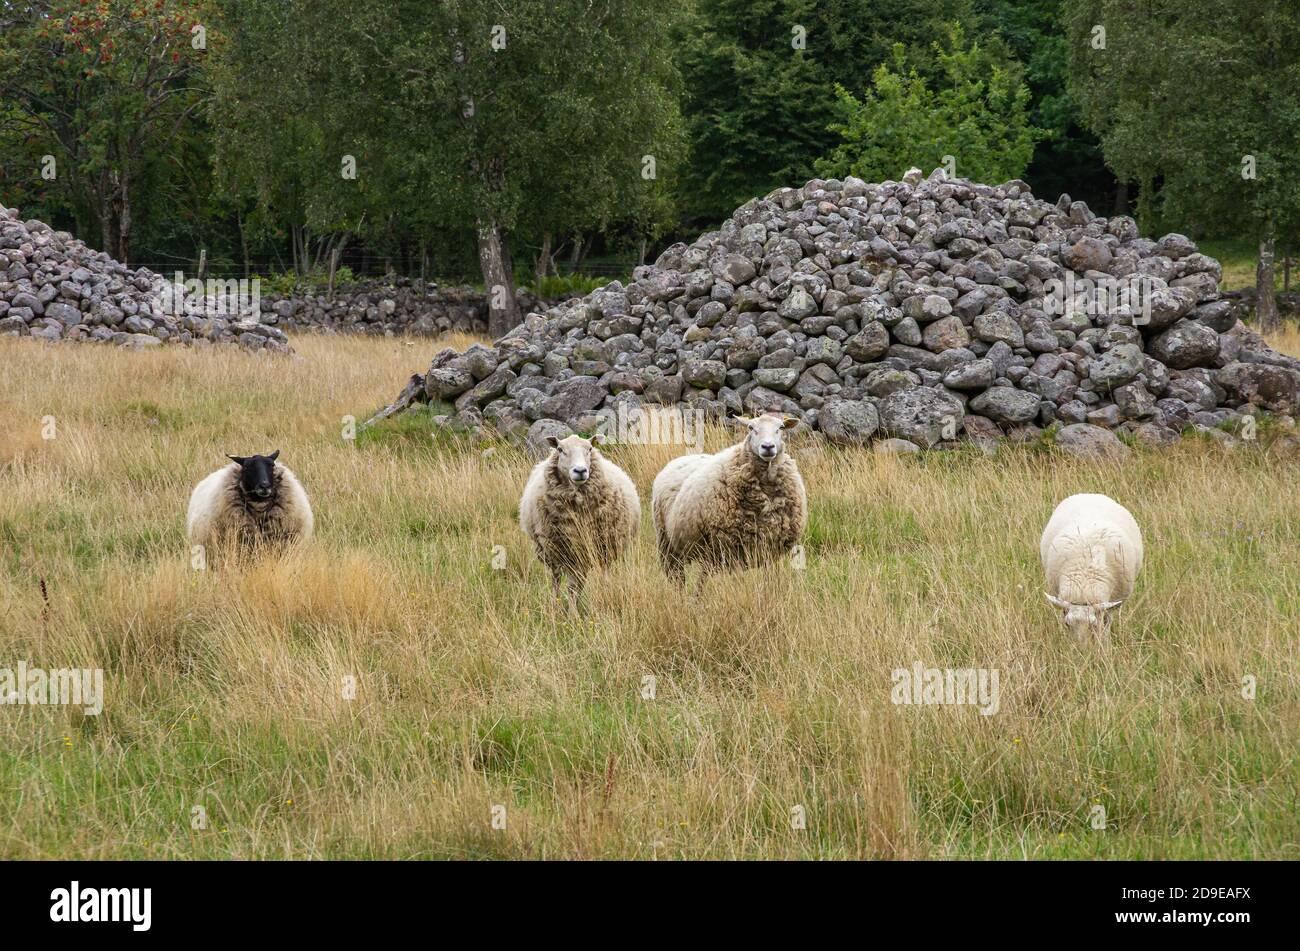 Cuatro ovejas pastando en un ambiente silvopasture en Suecia, concepto de cría de animales así como de la rebaño obediente y orientable. Foto de stock